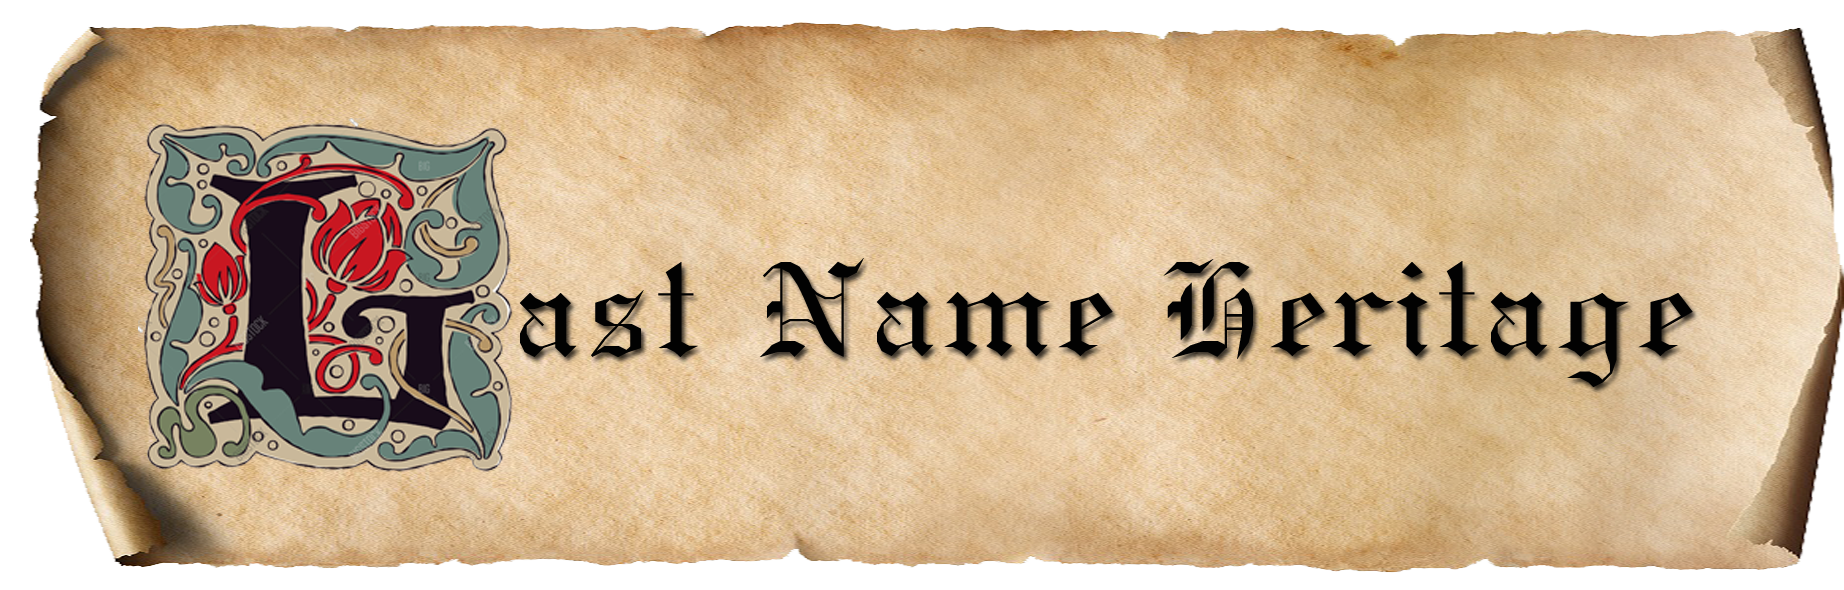 Last Name Heritage